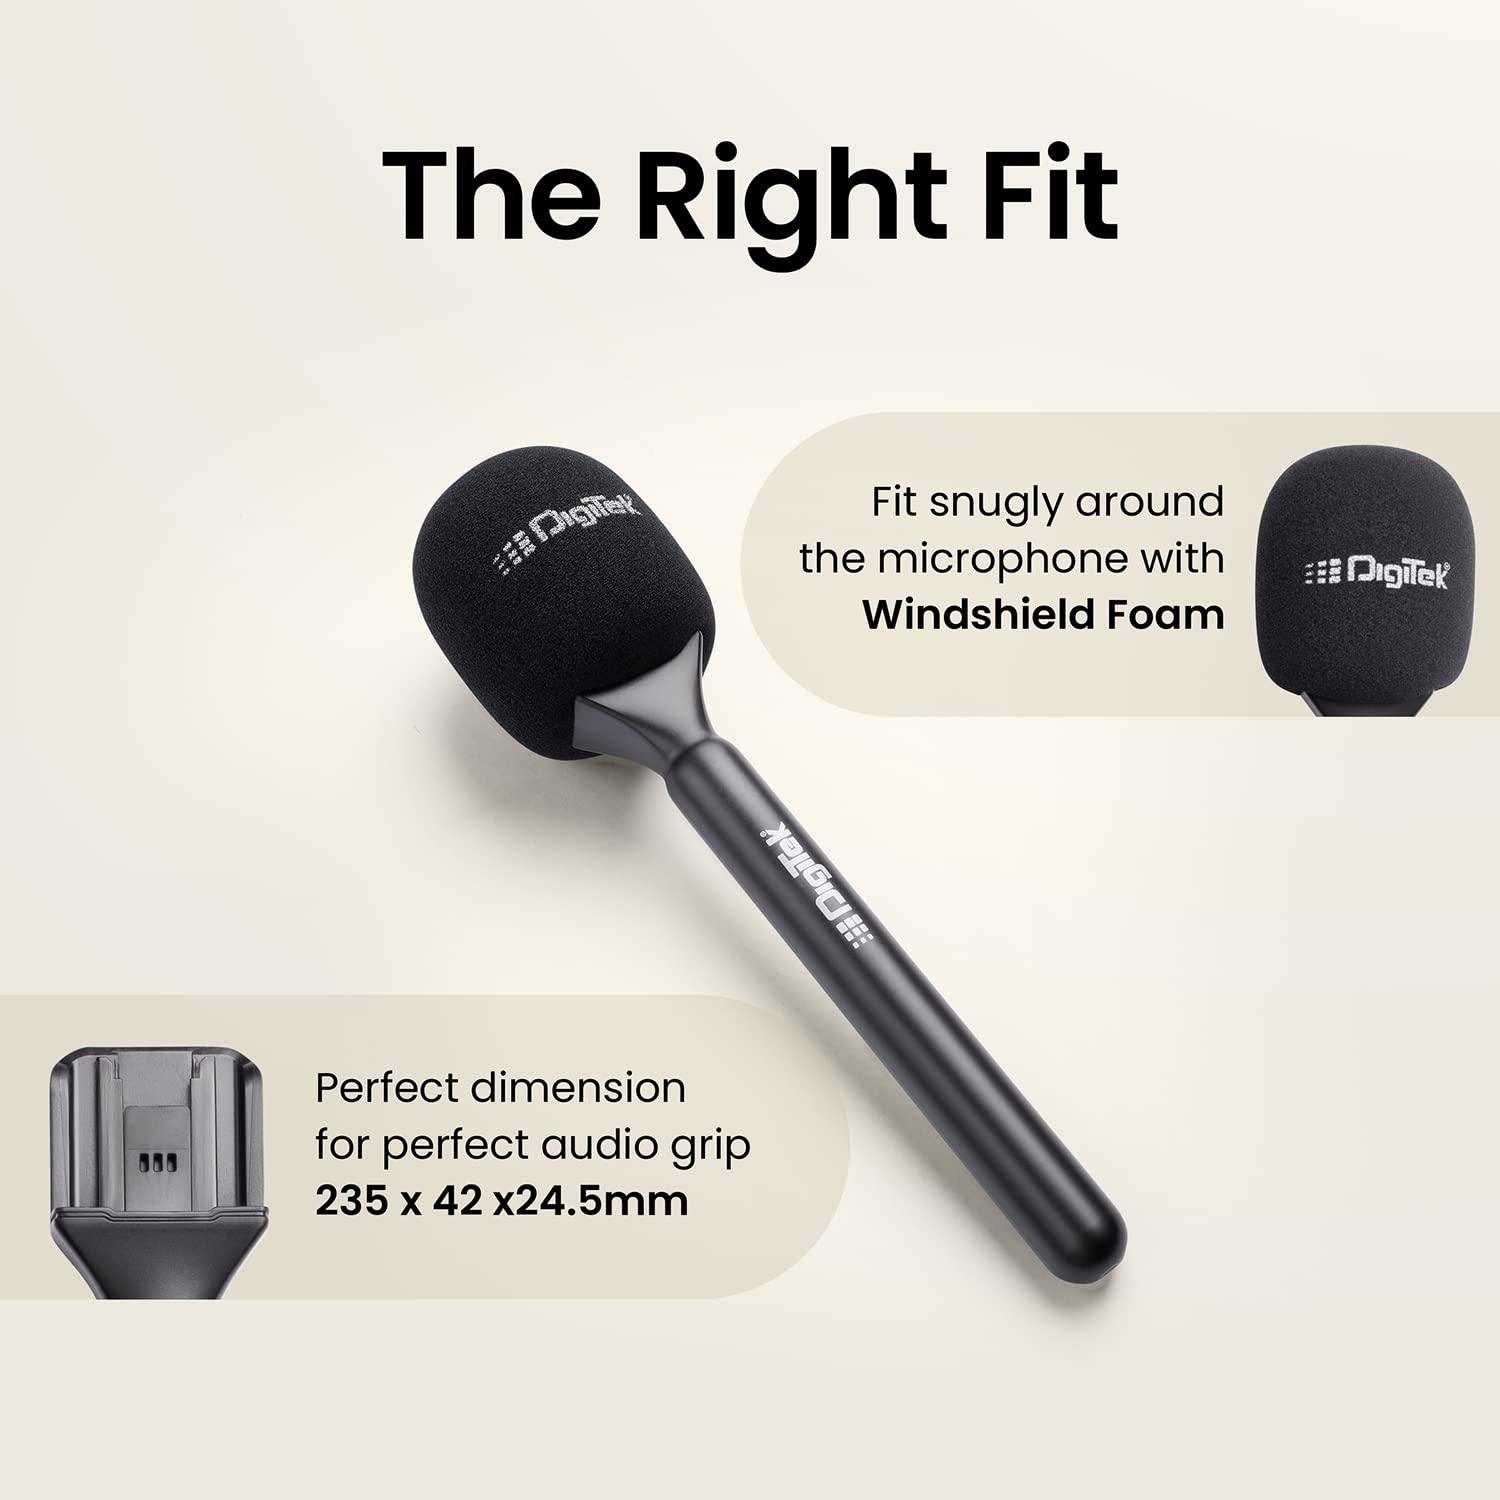 Buy Digitek (DHMA-101) Interview Adapter Compatible with DWM 101 & Other  WOnline Best Prices